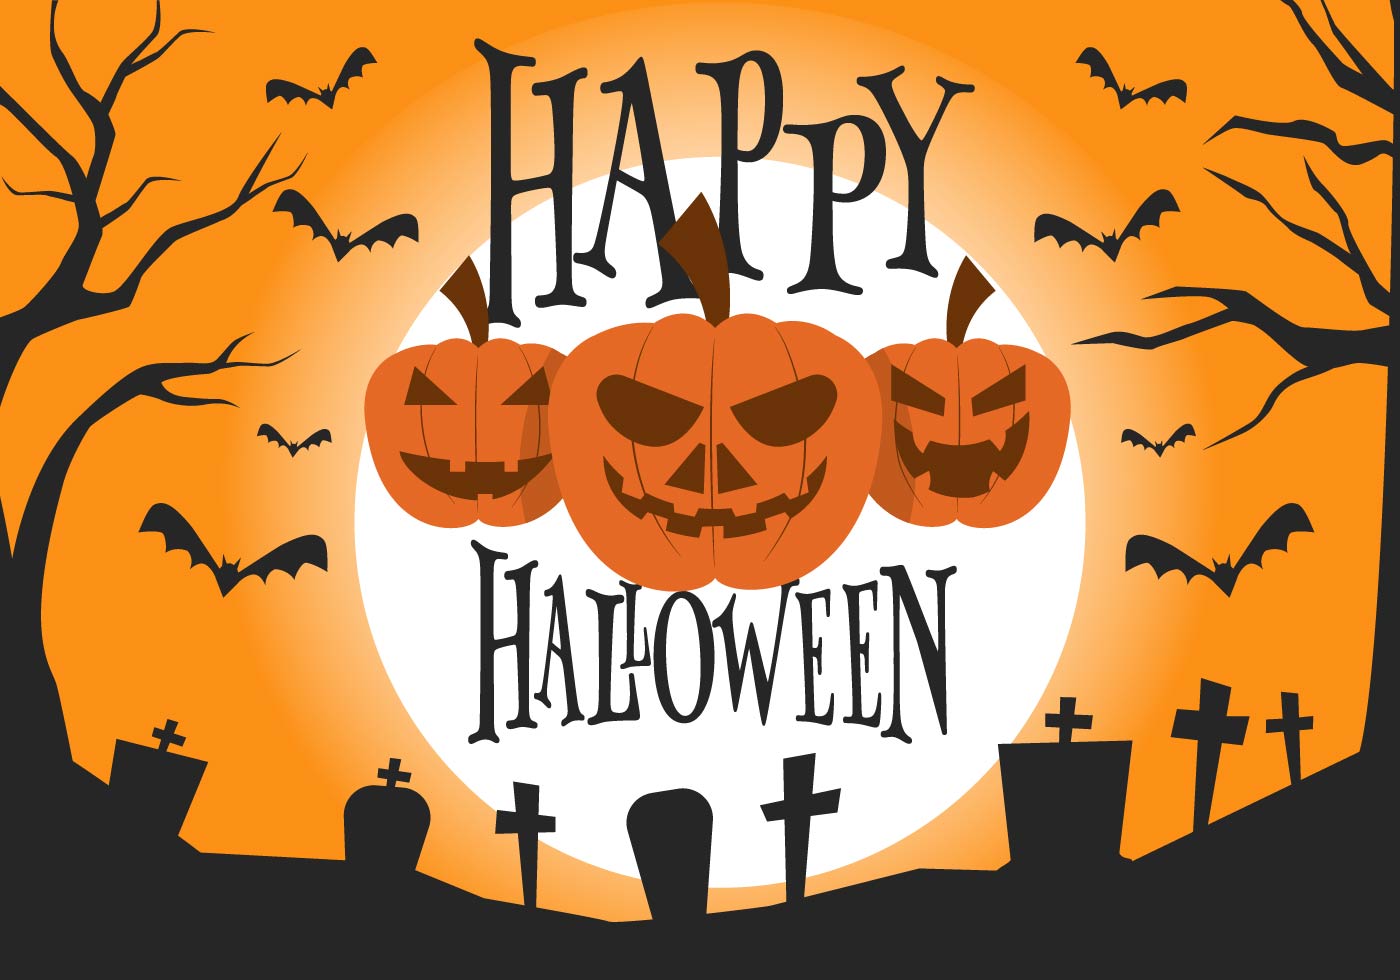 Free Halloween Vector Illustration - Download Free Vectors ...